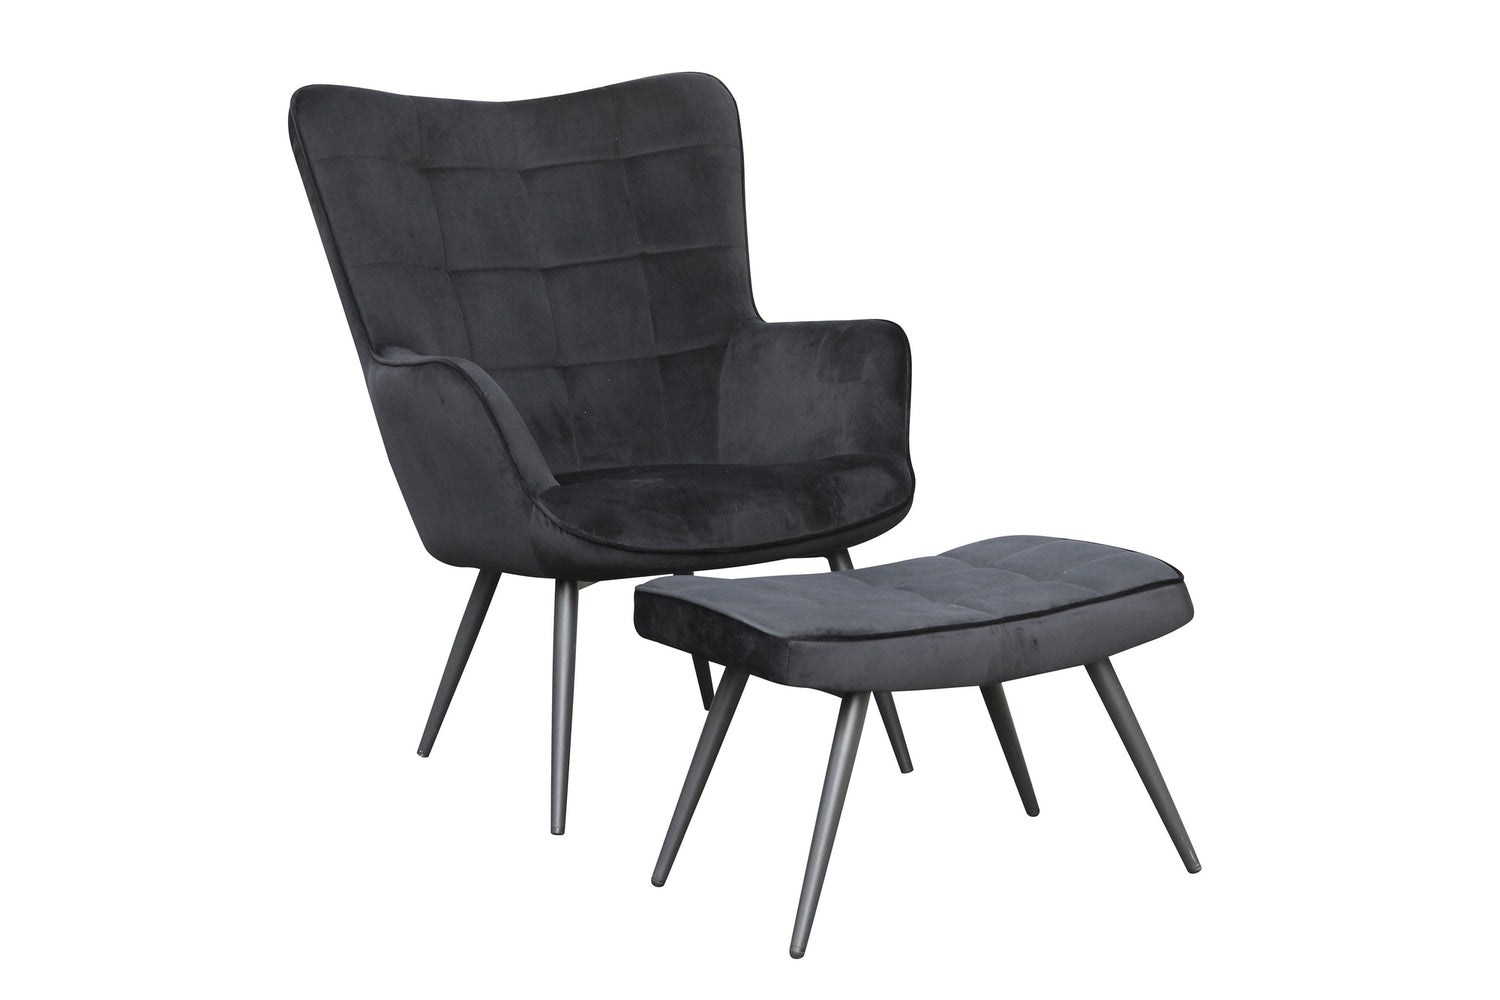 UTA Sessel, Gestell in schwarz, in schwarz, grau, sandfarben oder grün –  byLIVING